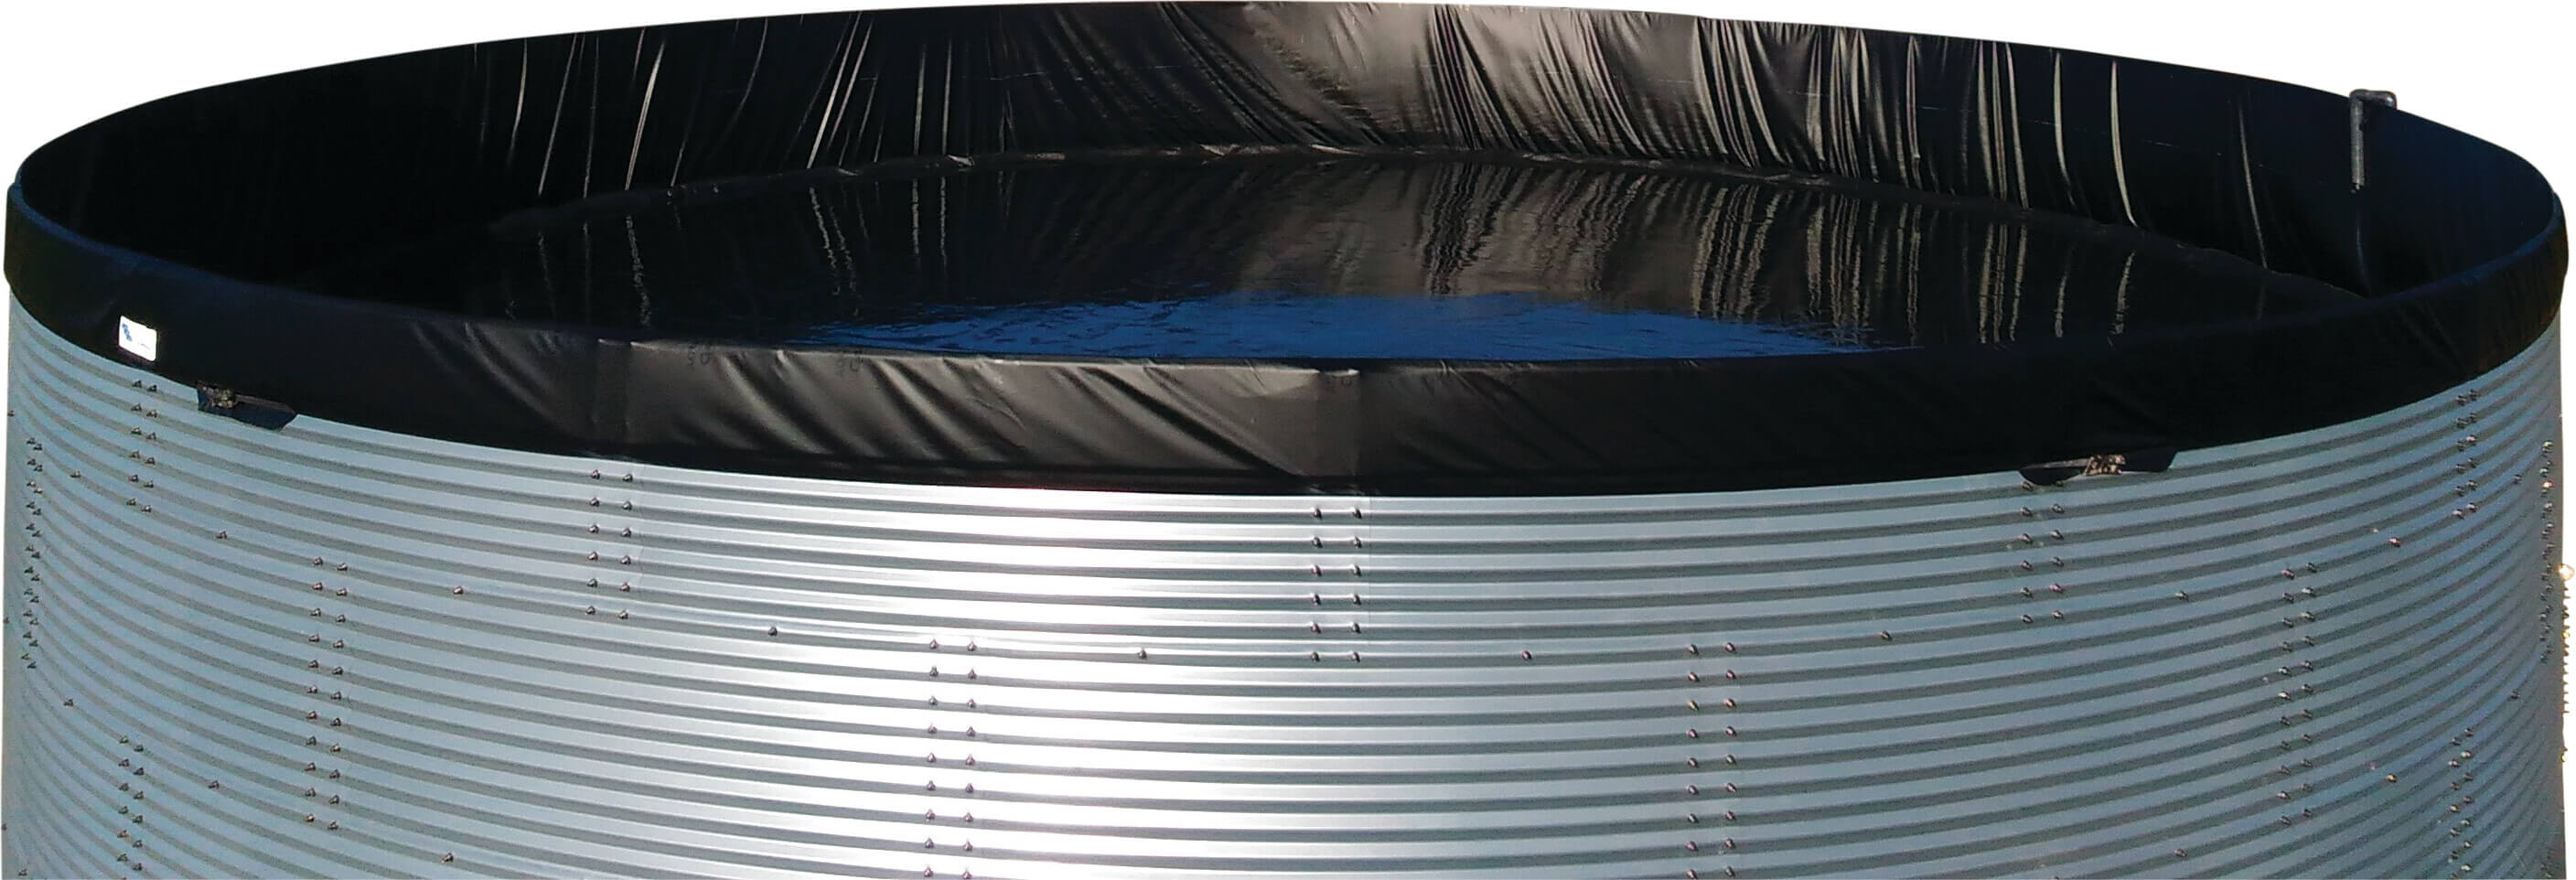 Water tank steel 2000ltr type Aquaculture/WSWAVC 1.34 x 1.59m